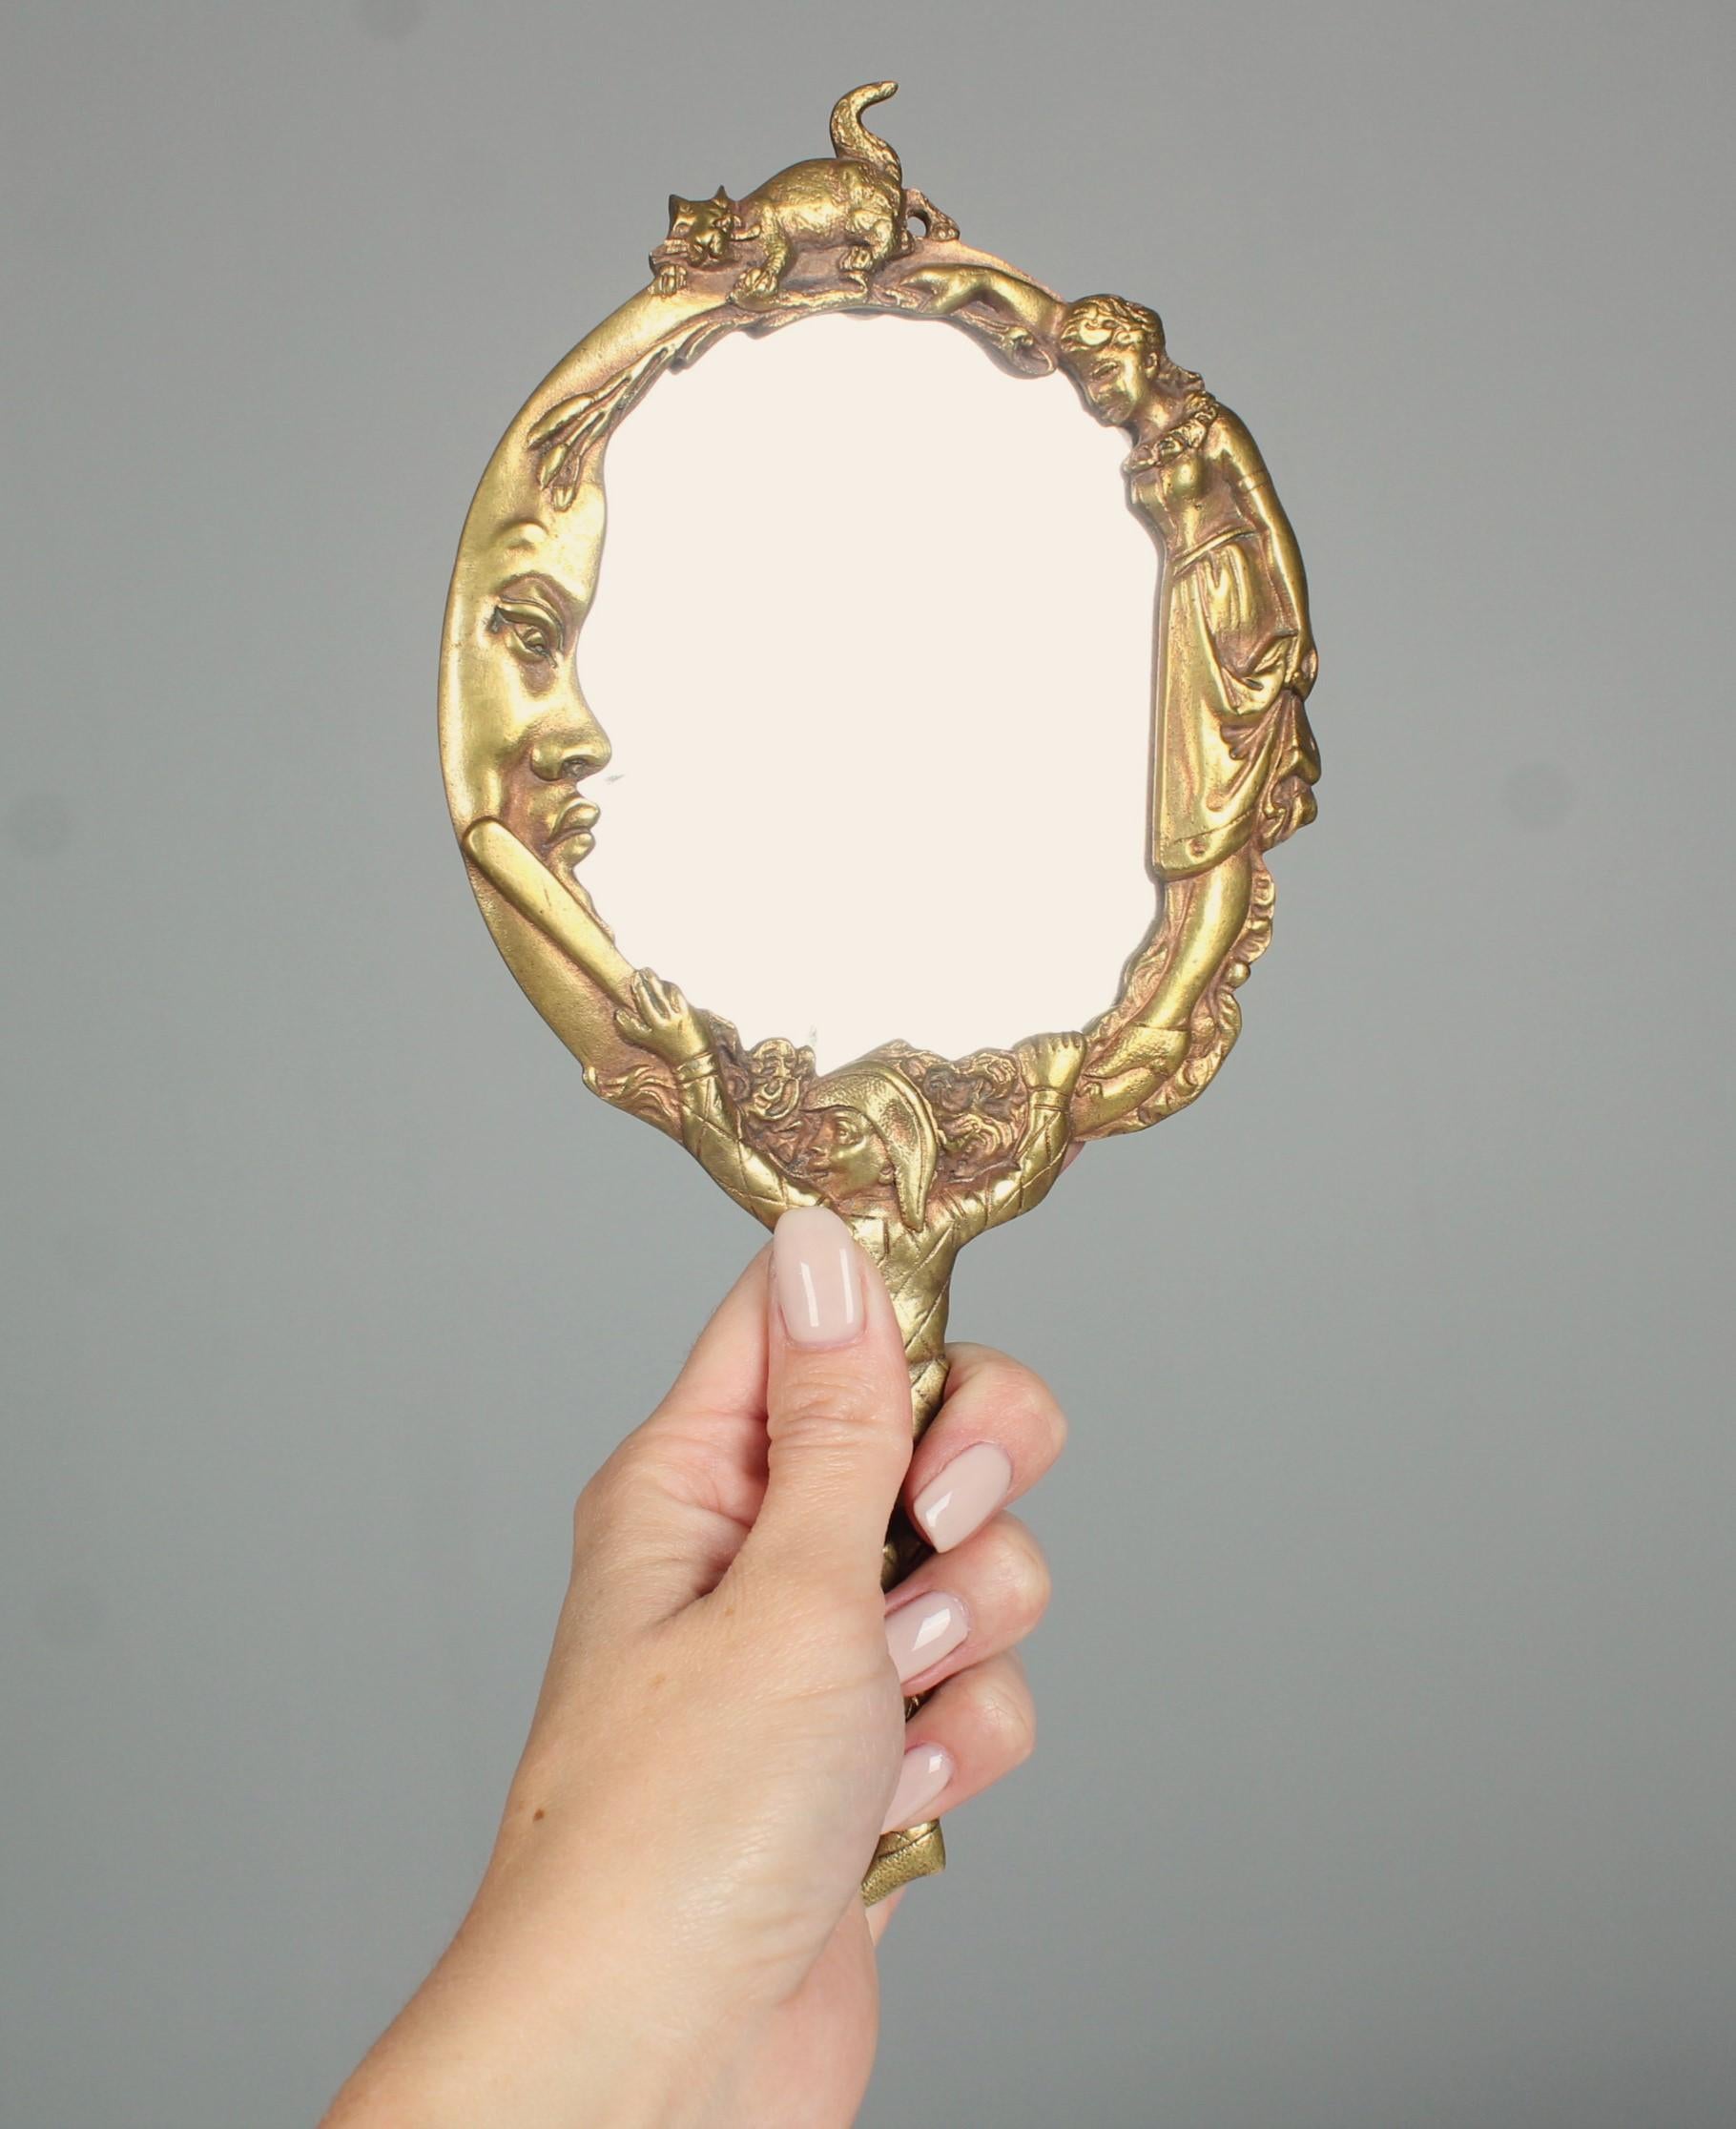 Magnifique miroir à main antique en bronze.
Miroir à facettes présentant des signes d'âge et d'utilisation.
Suspension au dos.